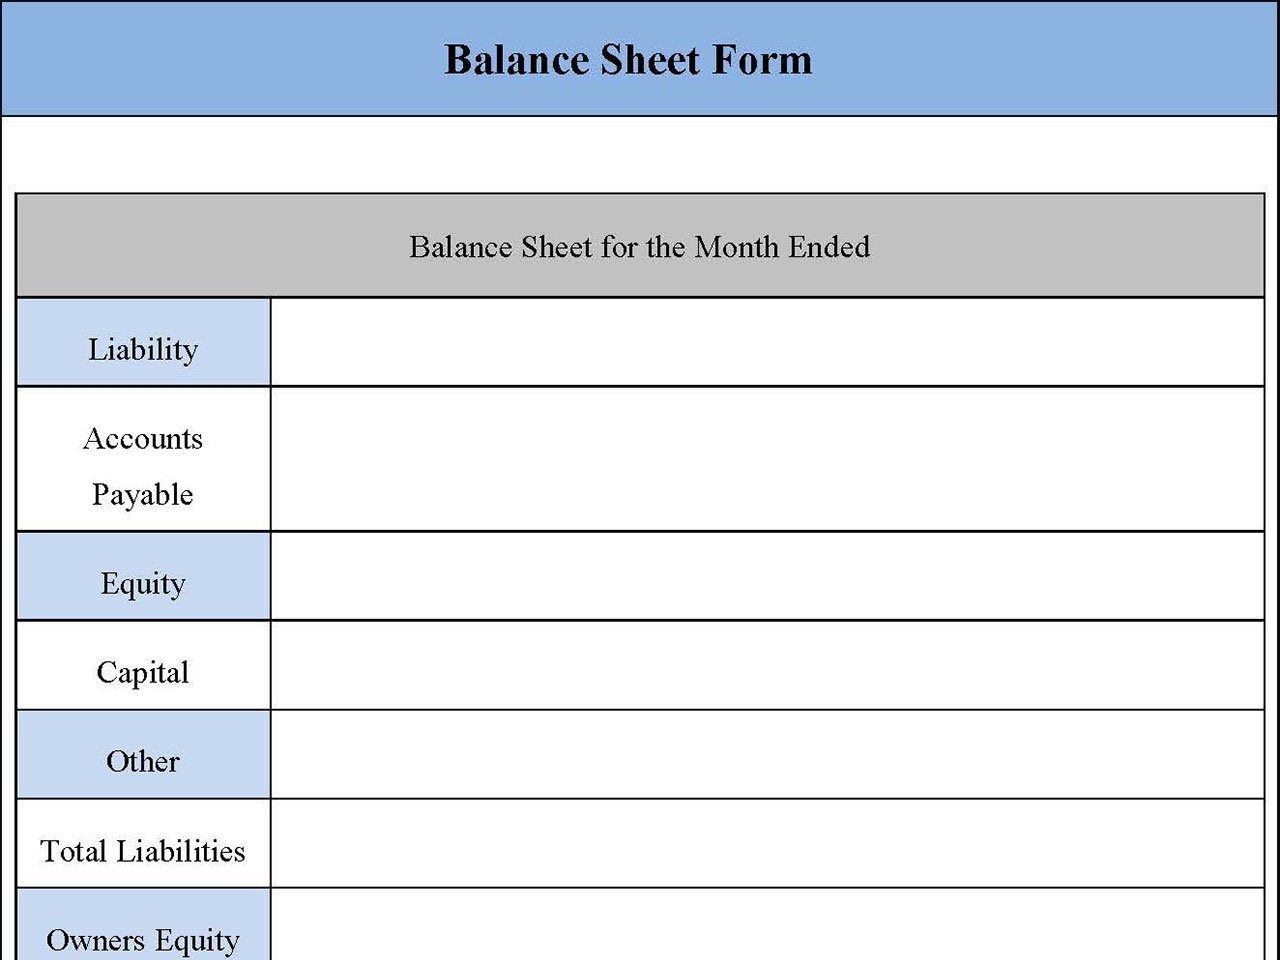 Balance Sheet Form